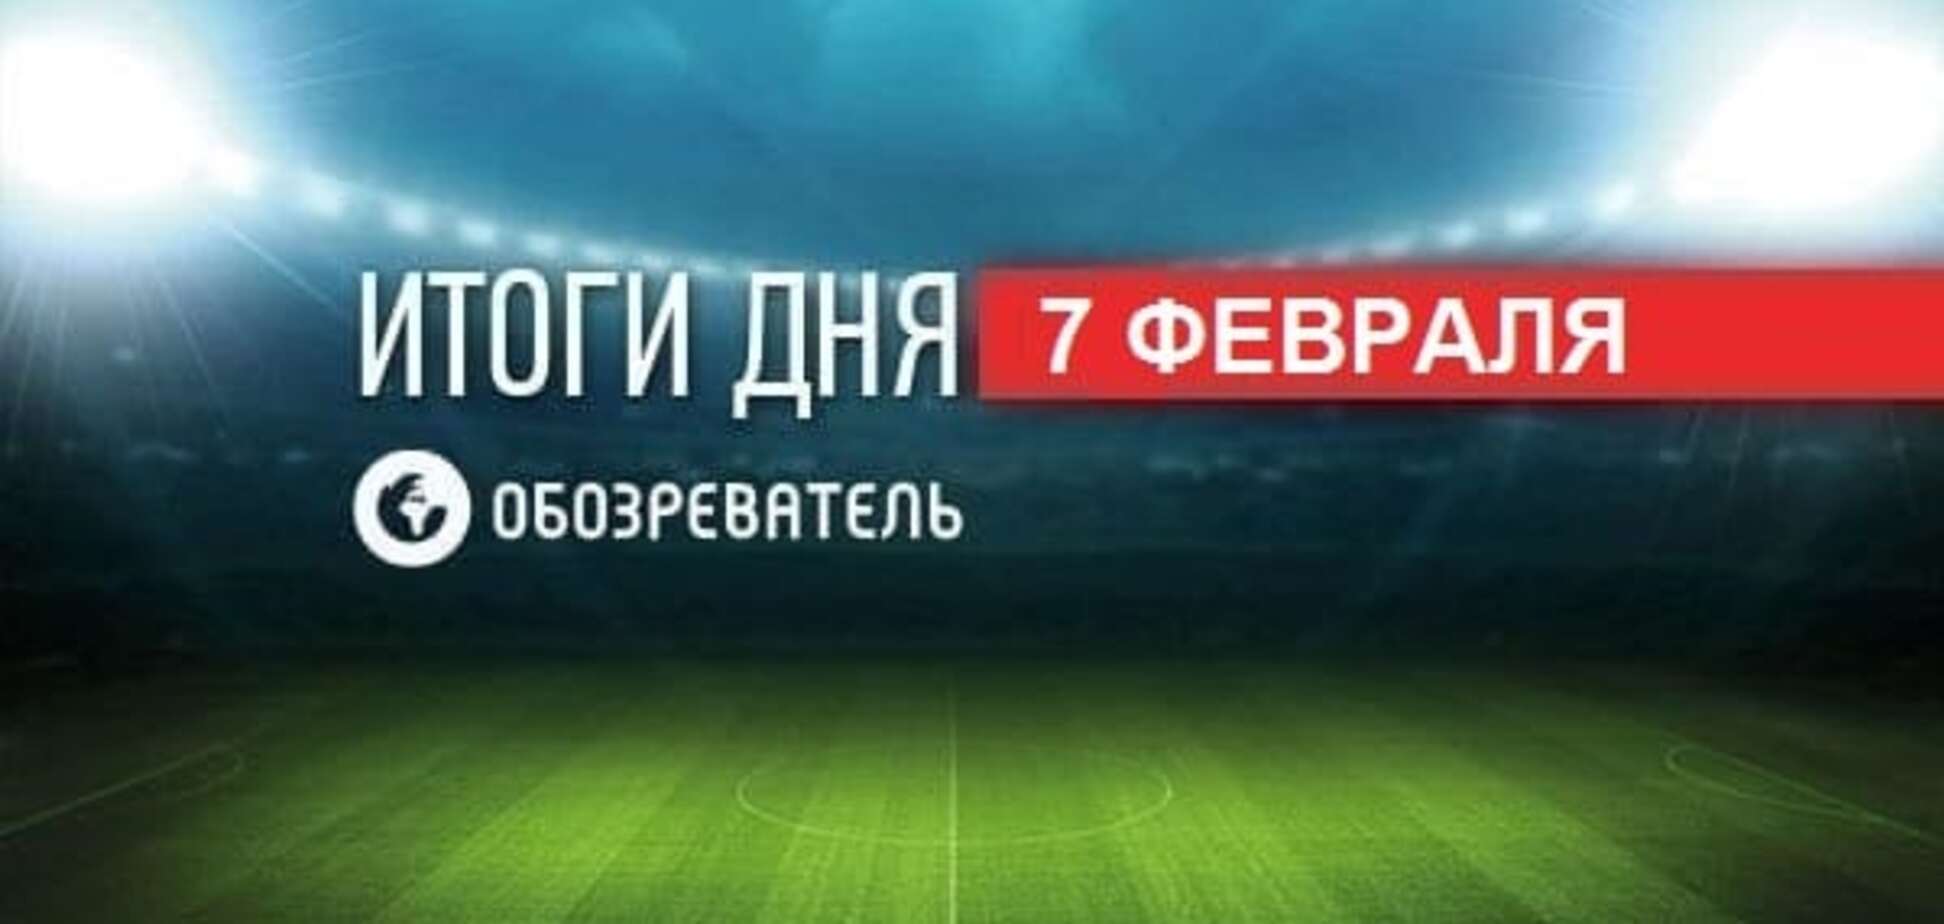 Коломойський ухвалив рішення щодо 'Дніпра'. Спортивні підсумки за 7 лютого